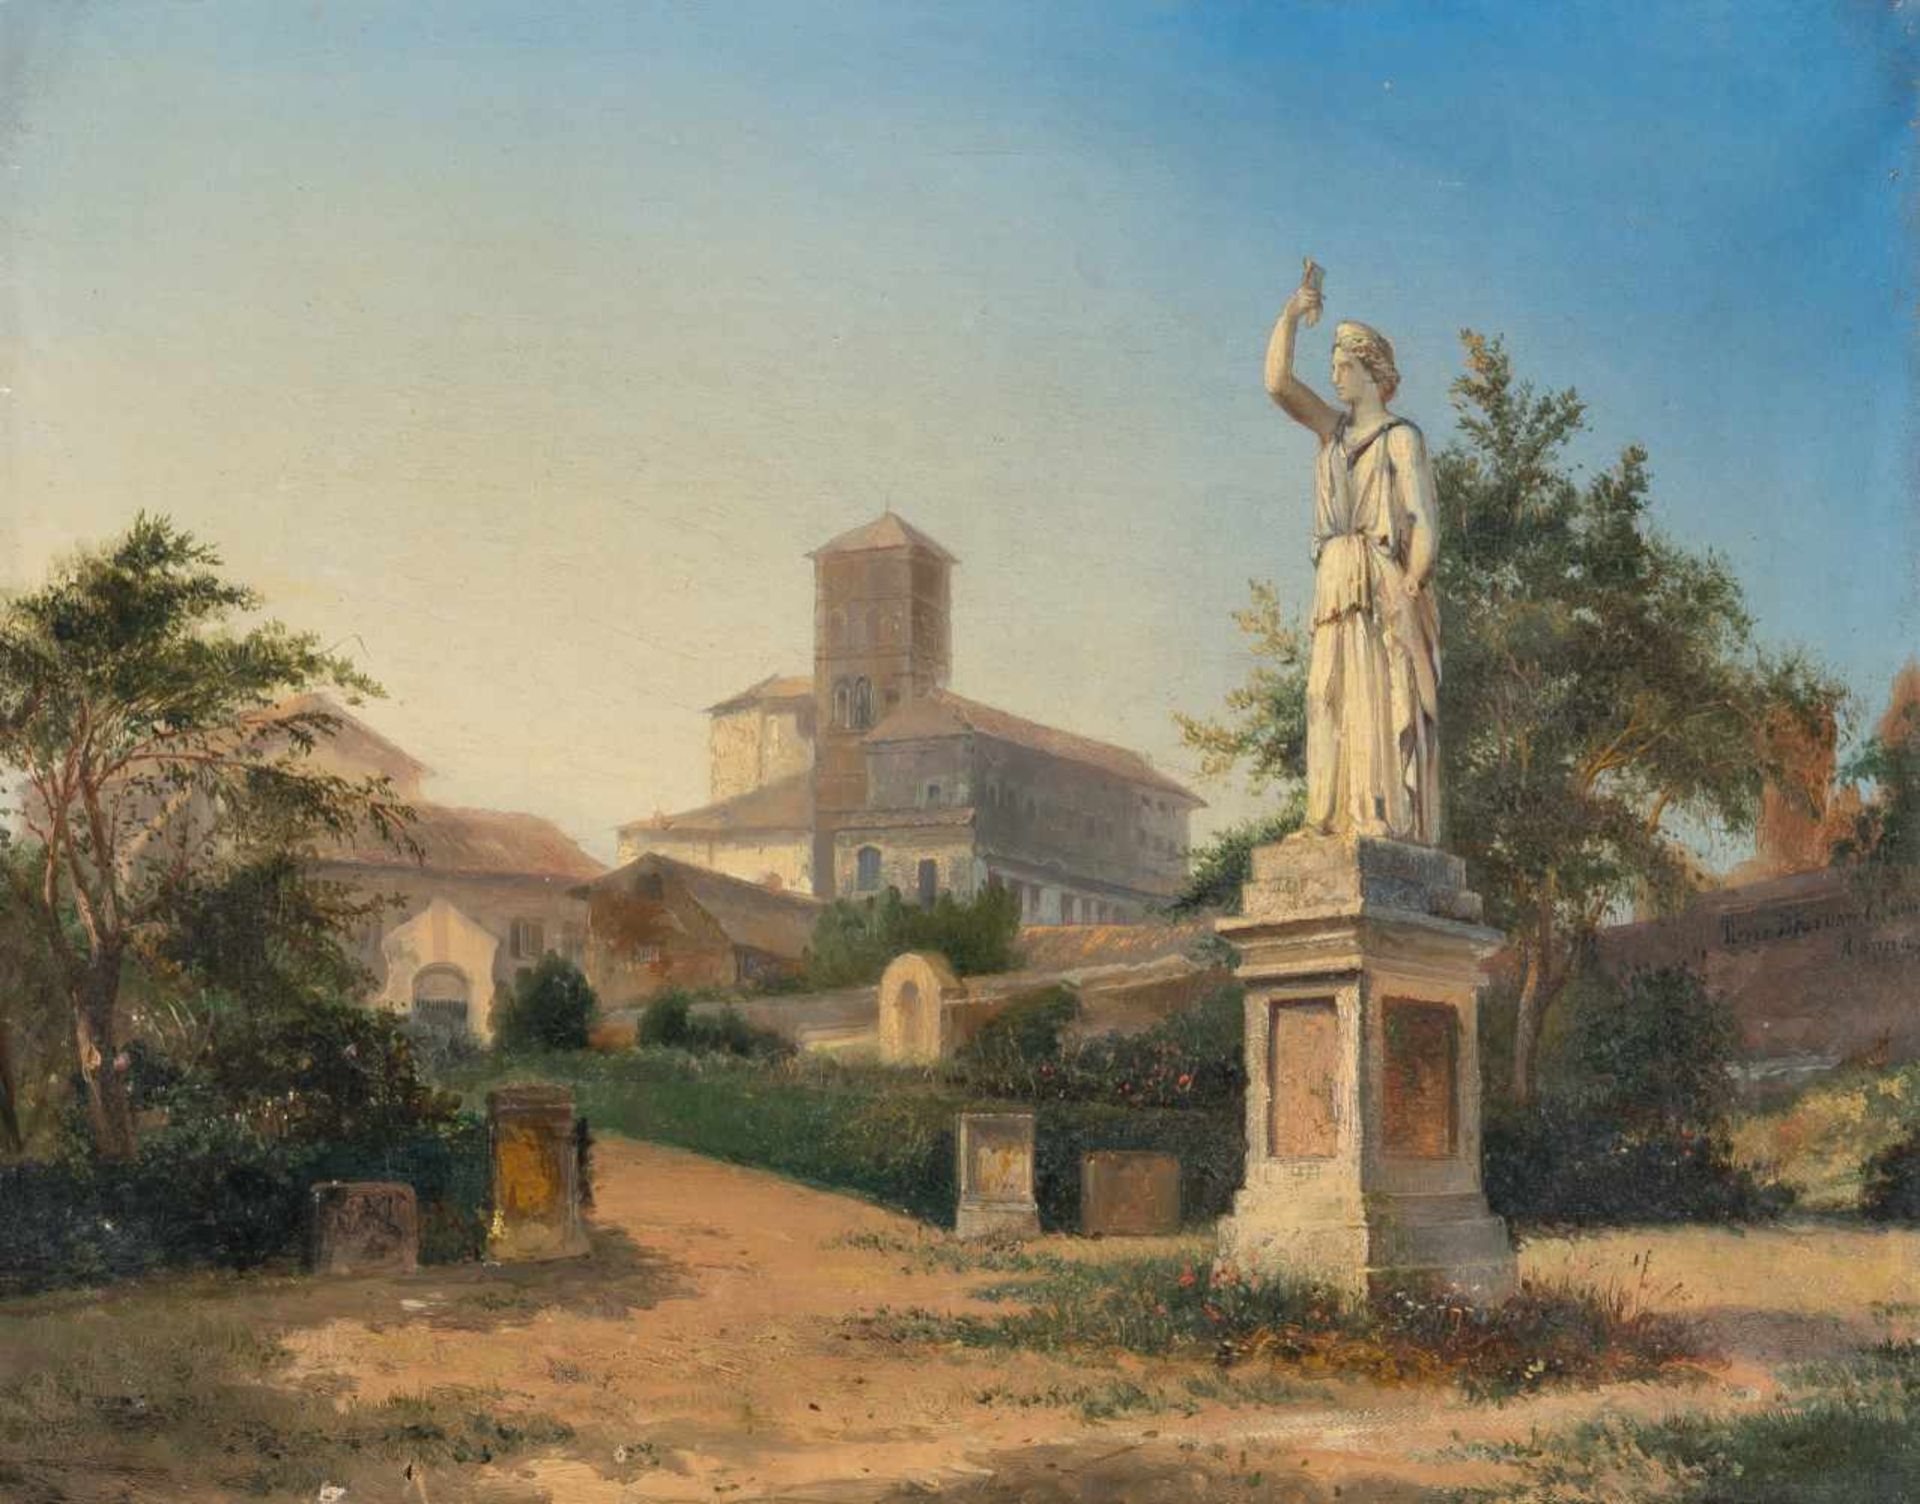 Pierre Tetar van Elven1828 Sint-Jans-Molenbeek – Mailand 1908Ansicht von RomÖl auf Leinwand. 33 x 41